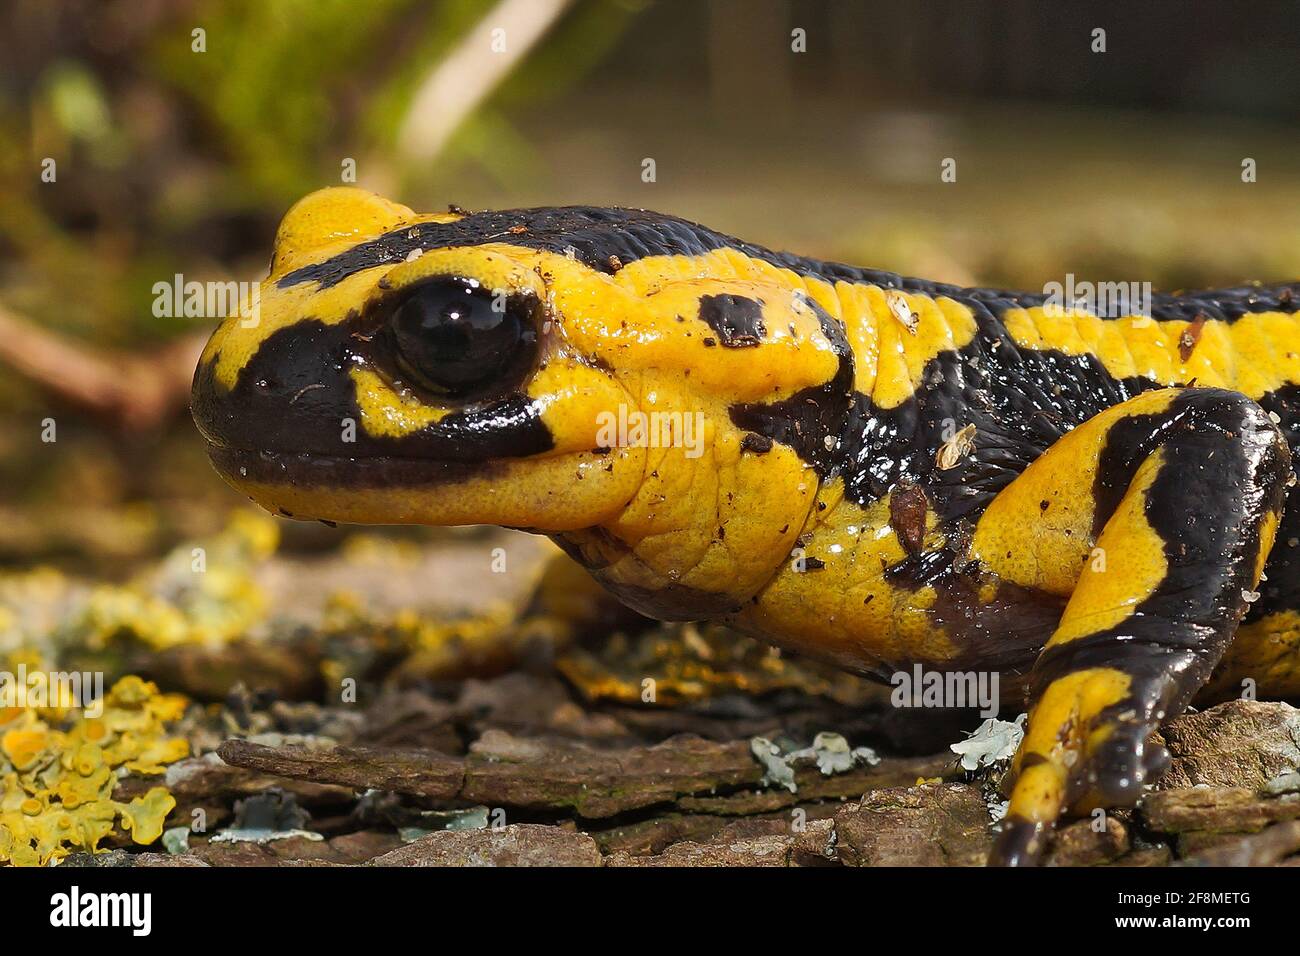 Bright yellow-colored Tendi fire salamander (Salamandra bernardezi) crawling on the ground Stock Photo